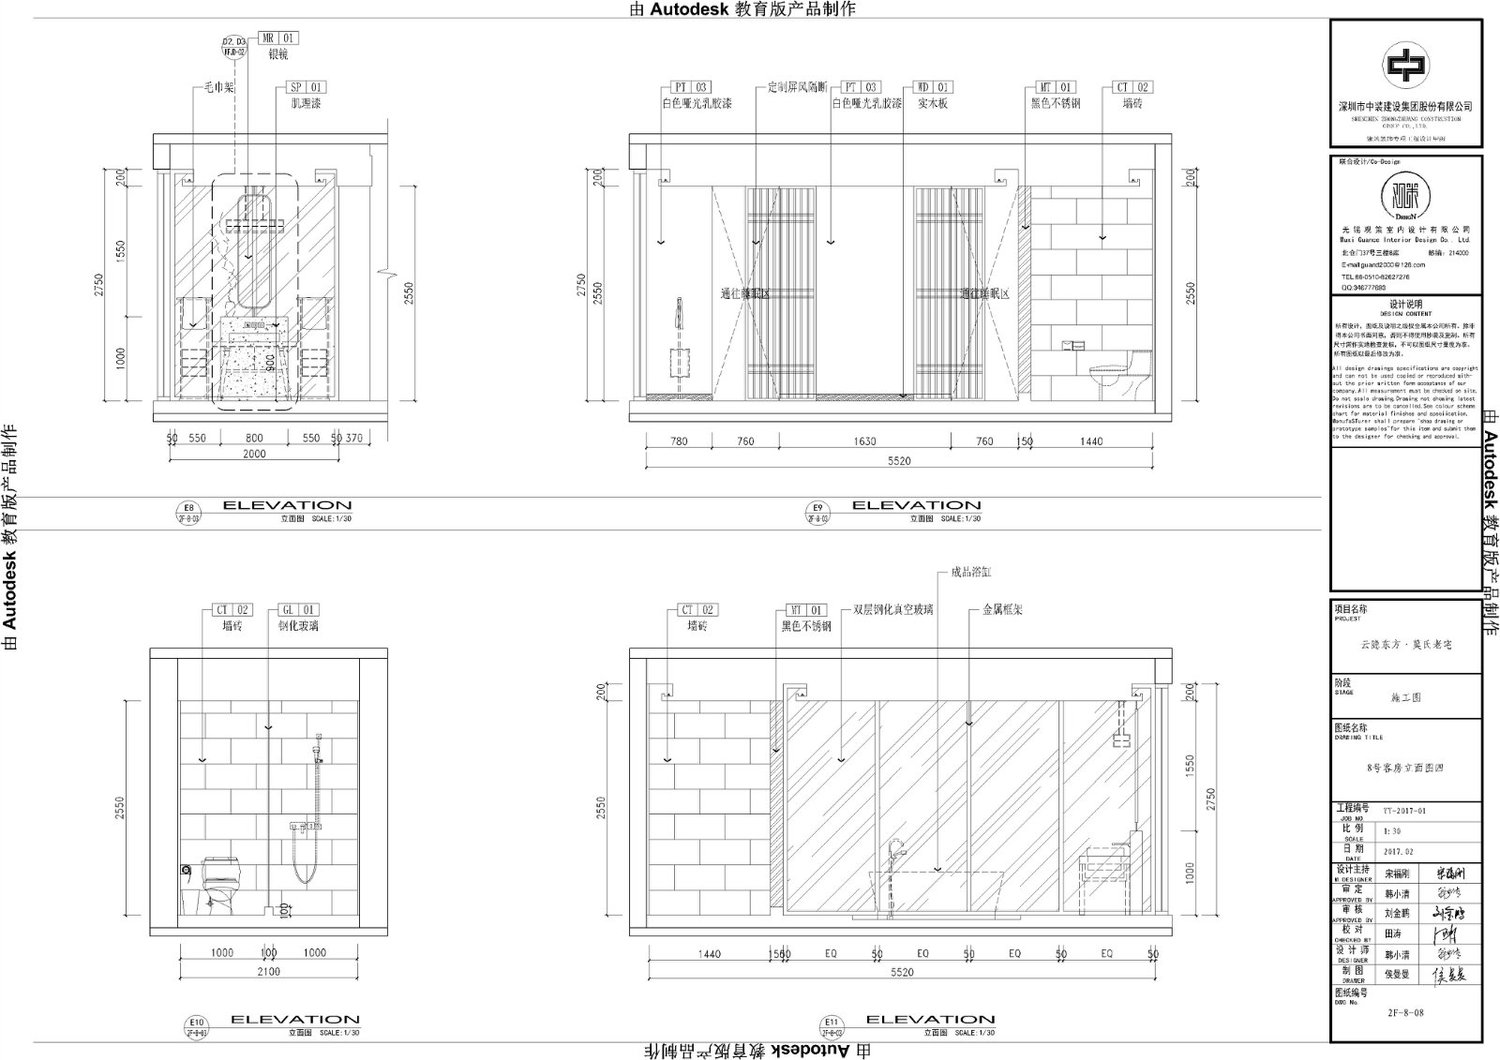 TechDrawing6 | Shenzhen Zhongzhuang Construction Group Co.,LTD